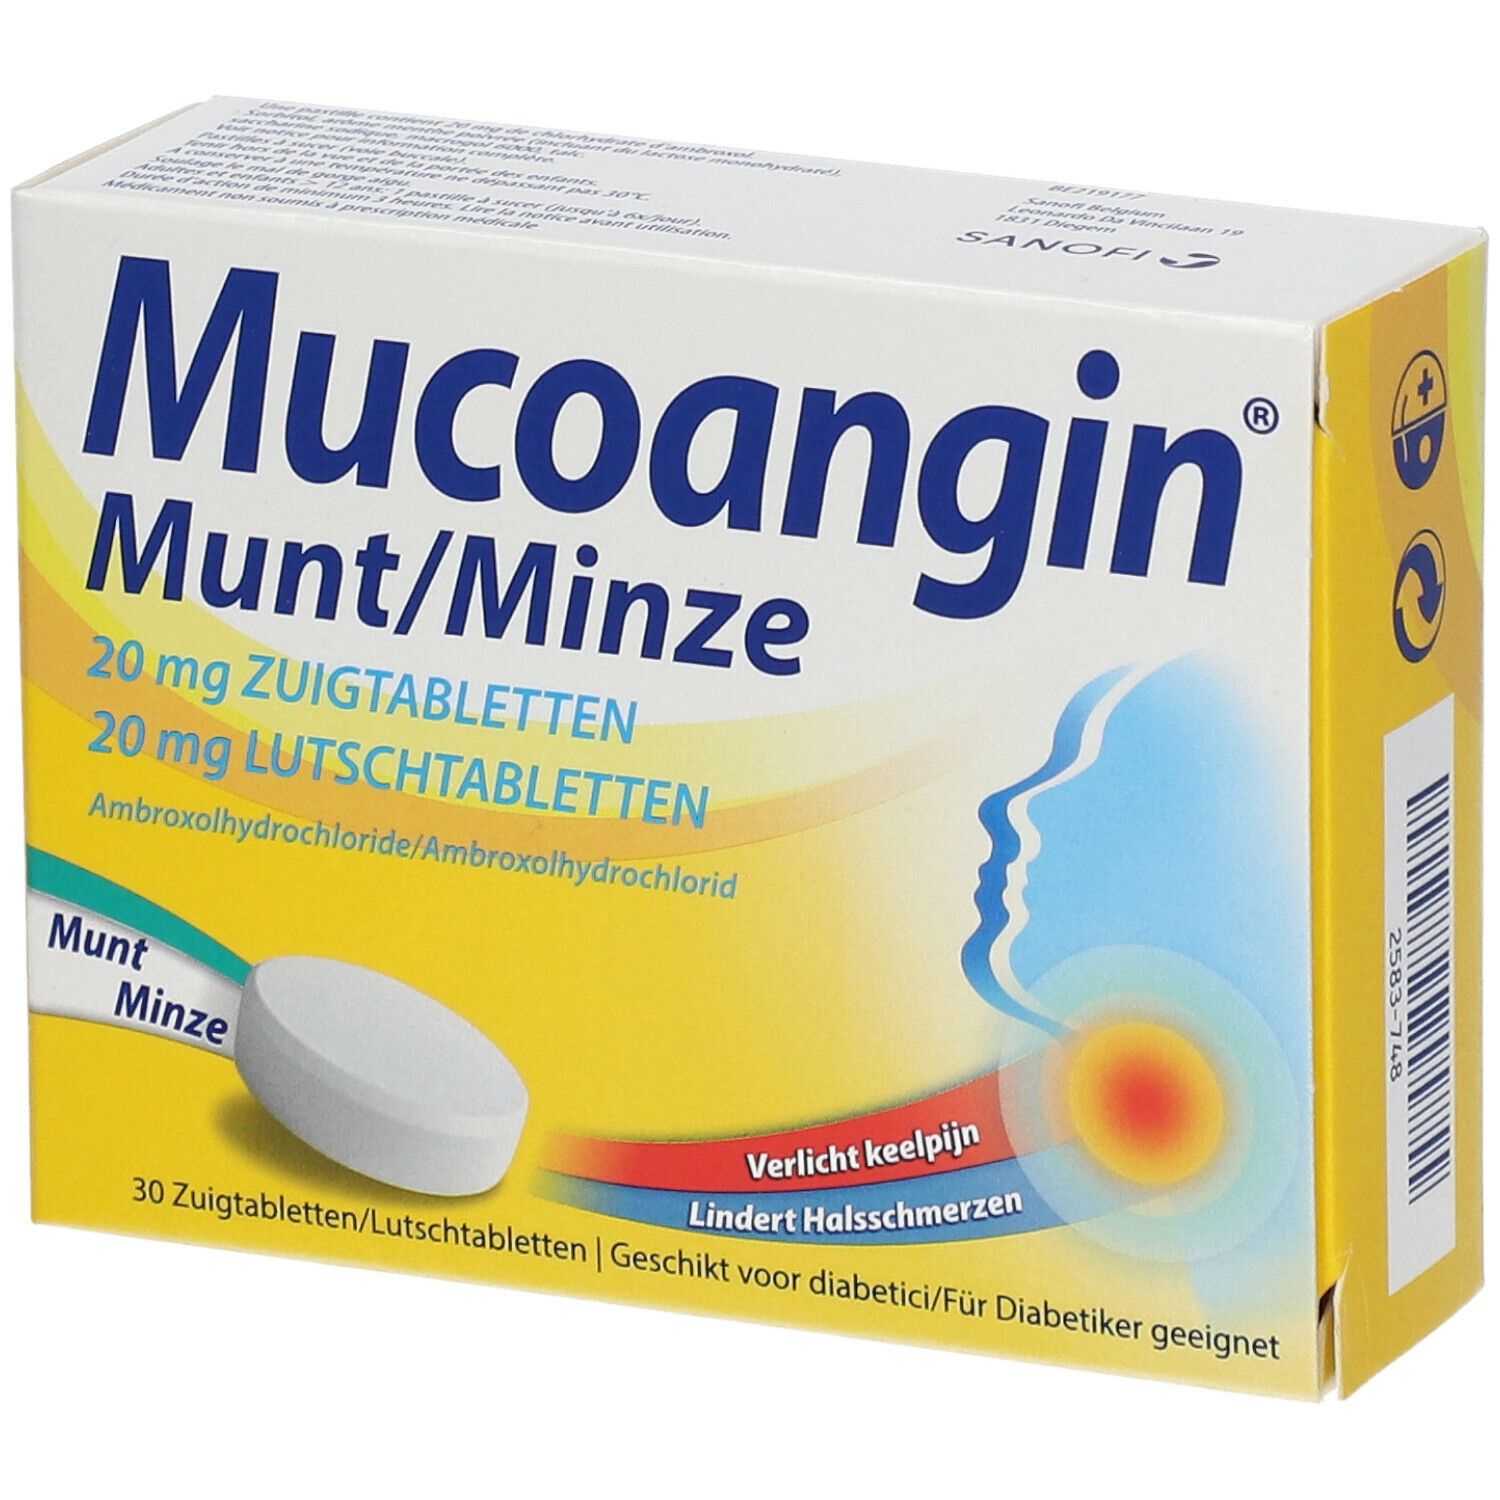 Mucoangin Munt 20mg - Voor Keelpijn